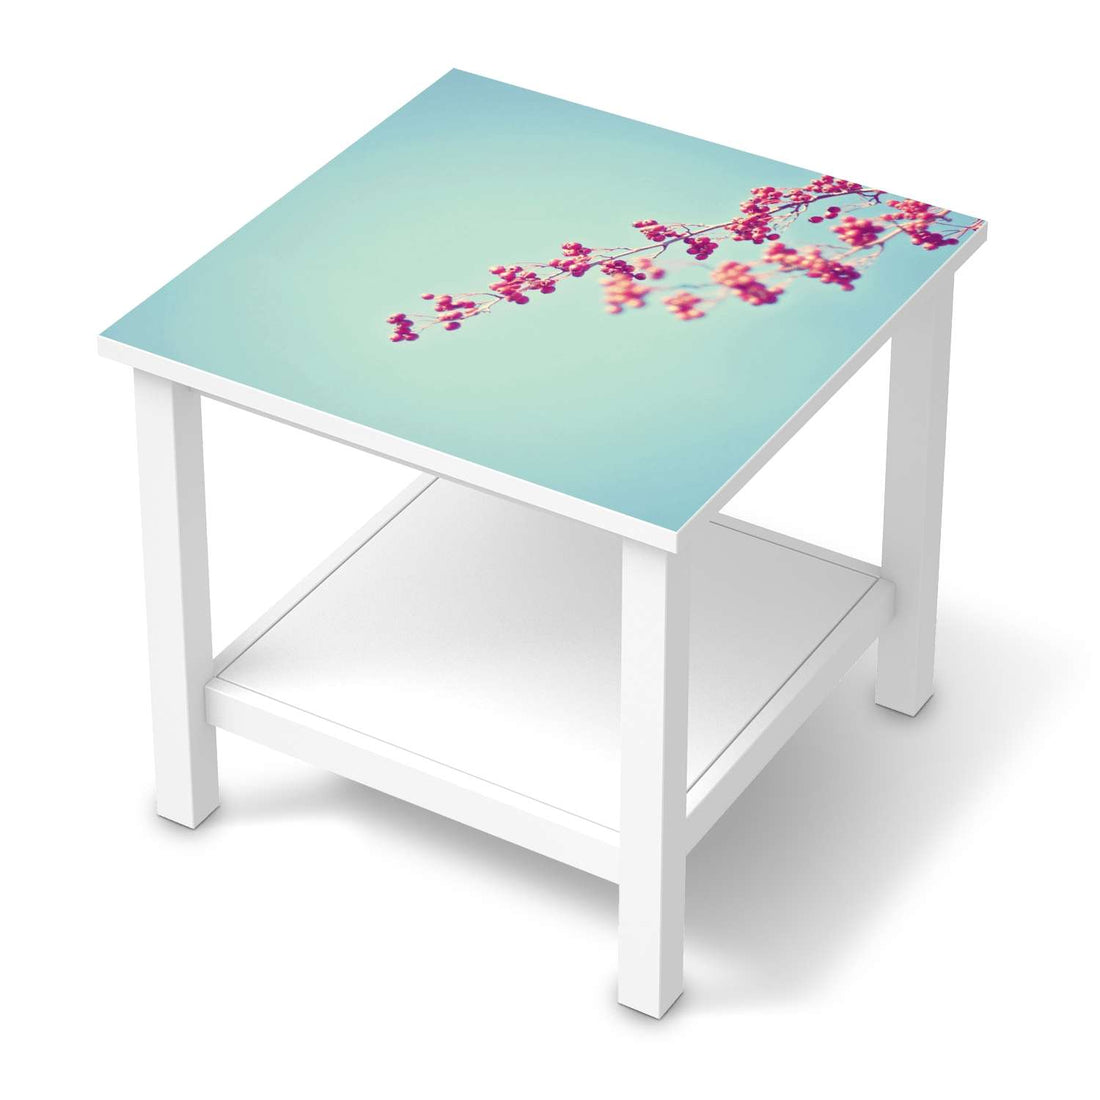 Möbel Klebefolie Ikebana für Anfänger - IKEA Hemnes Beistelltisch 55x55 cm  - weiss